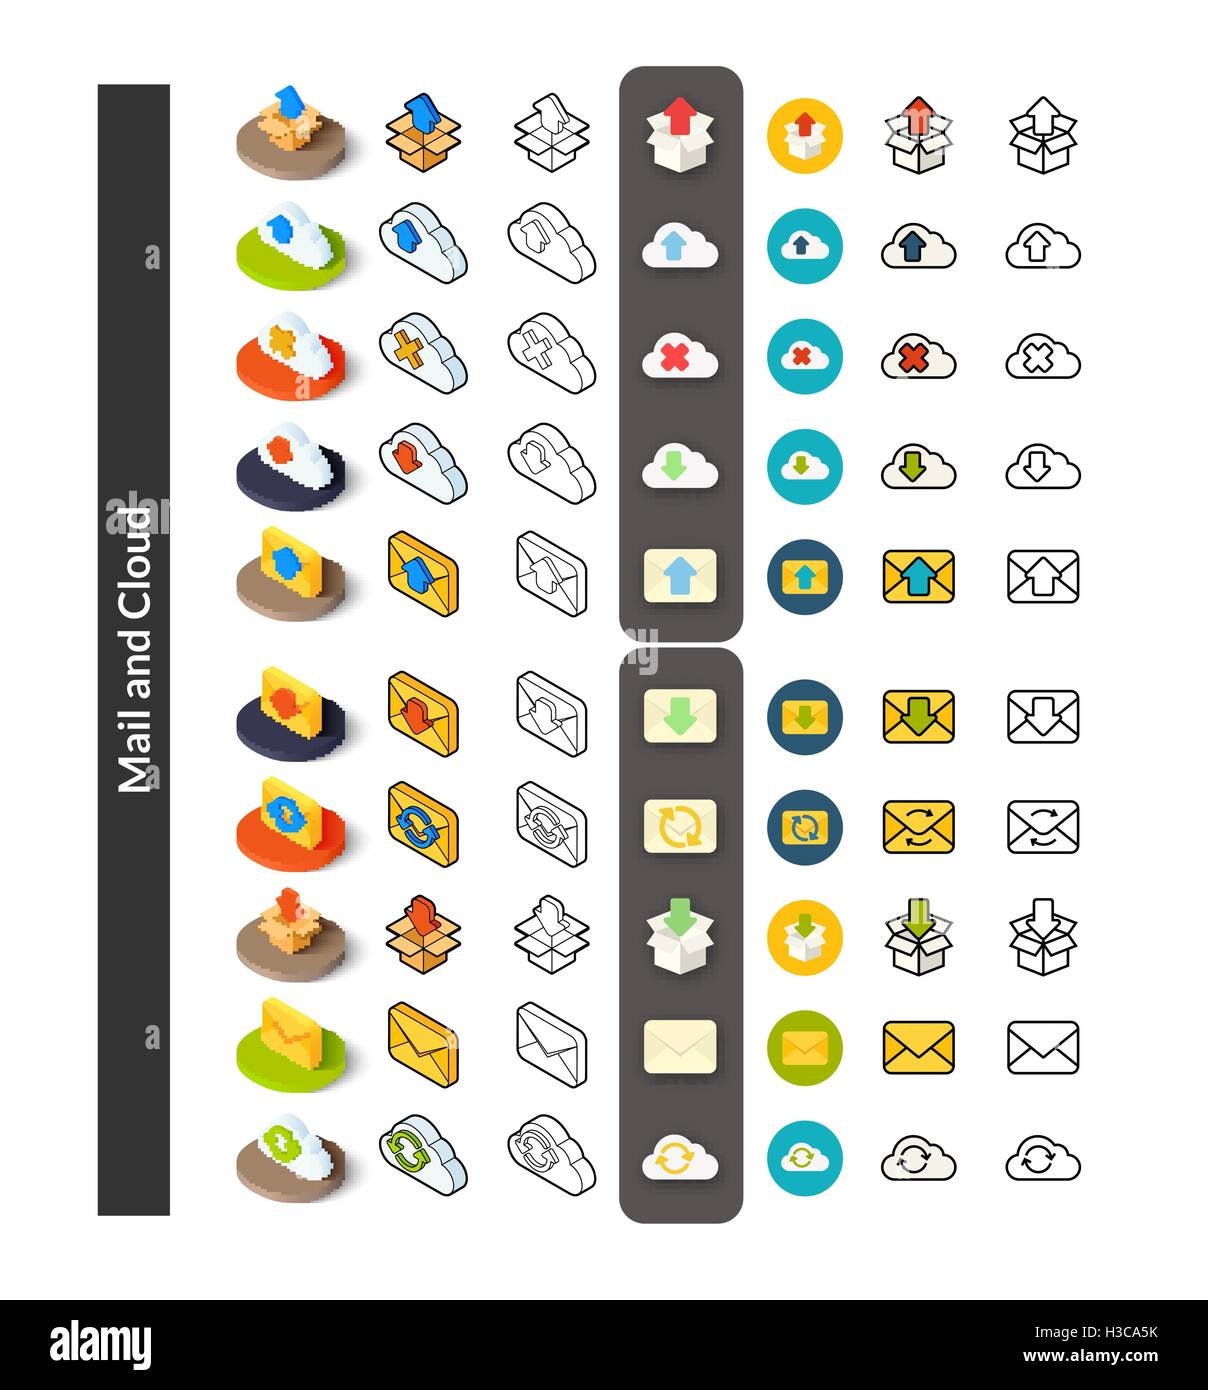 Set von Icons in verschiedenen Stil - isometrische flach und Otline, farbige und schwarze Versionen Stock Vektor